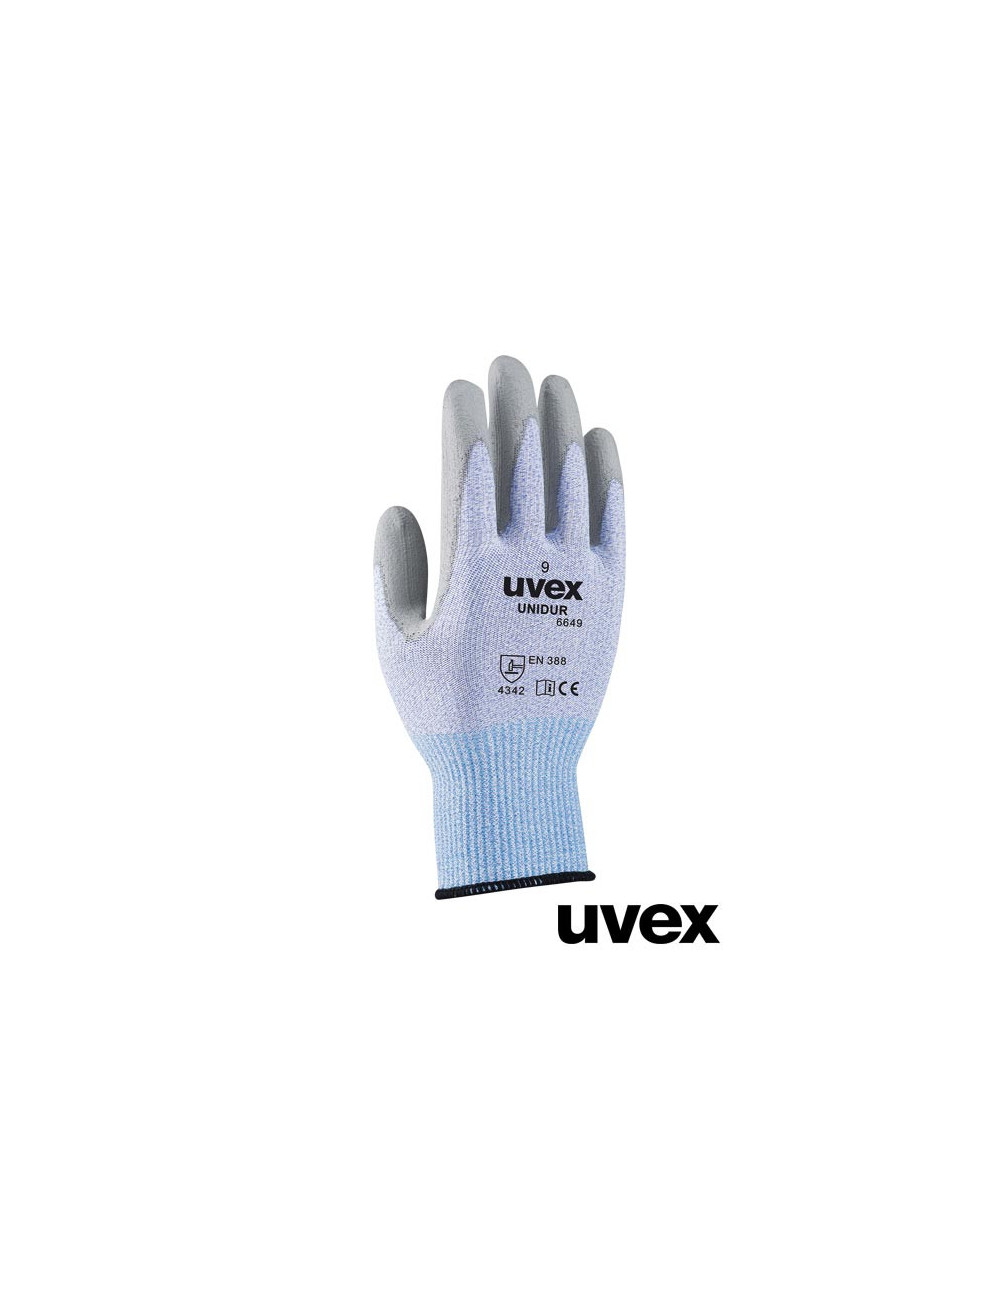 BWS Schutzhandschuhe schwarz, weiß und grau Uvex Ruvex-uni6649